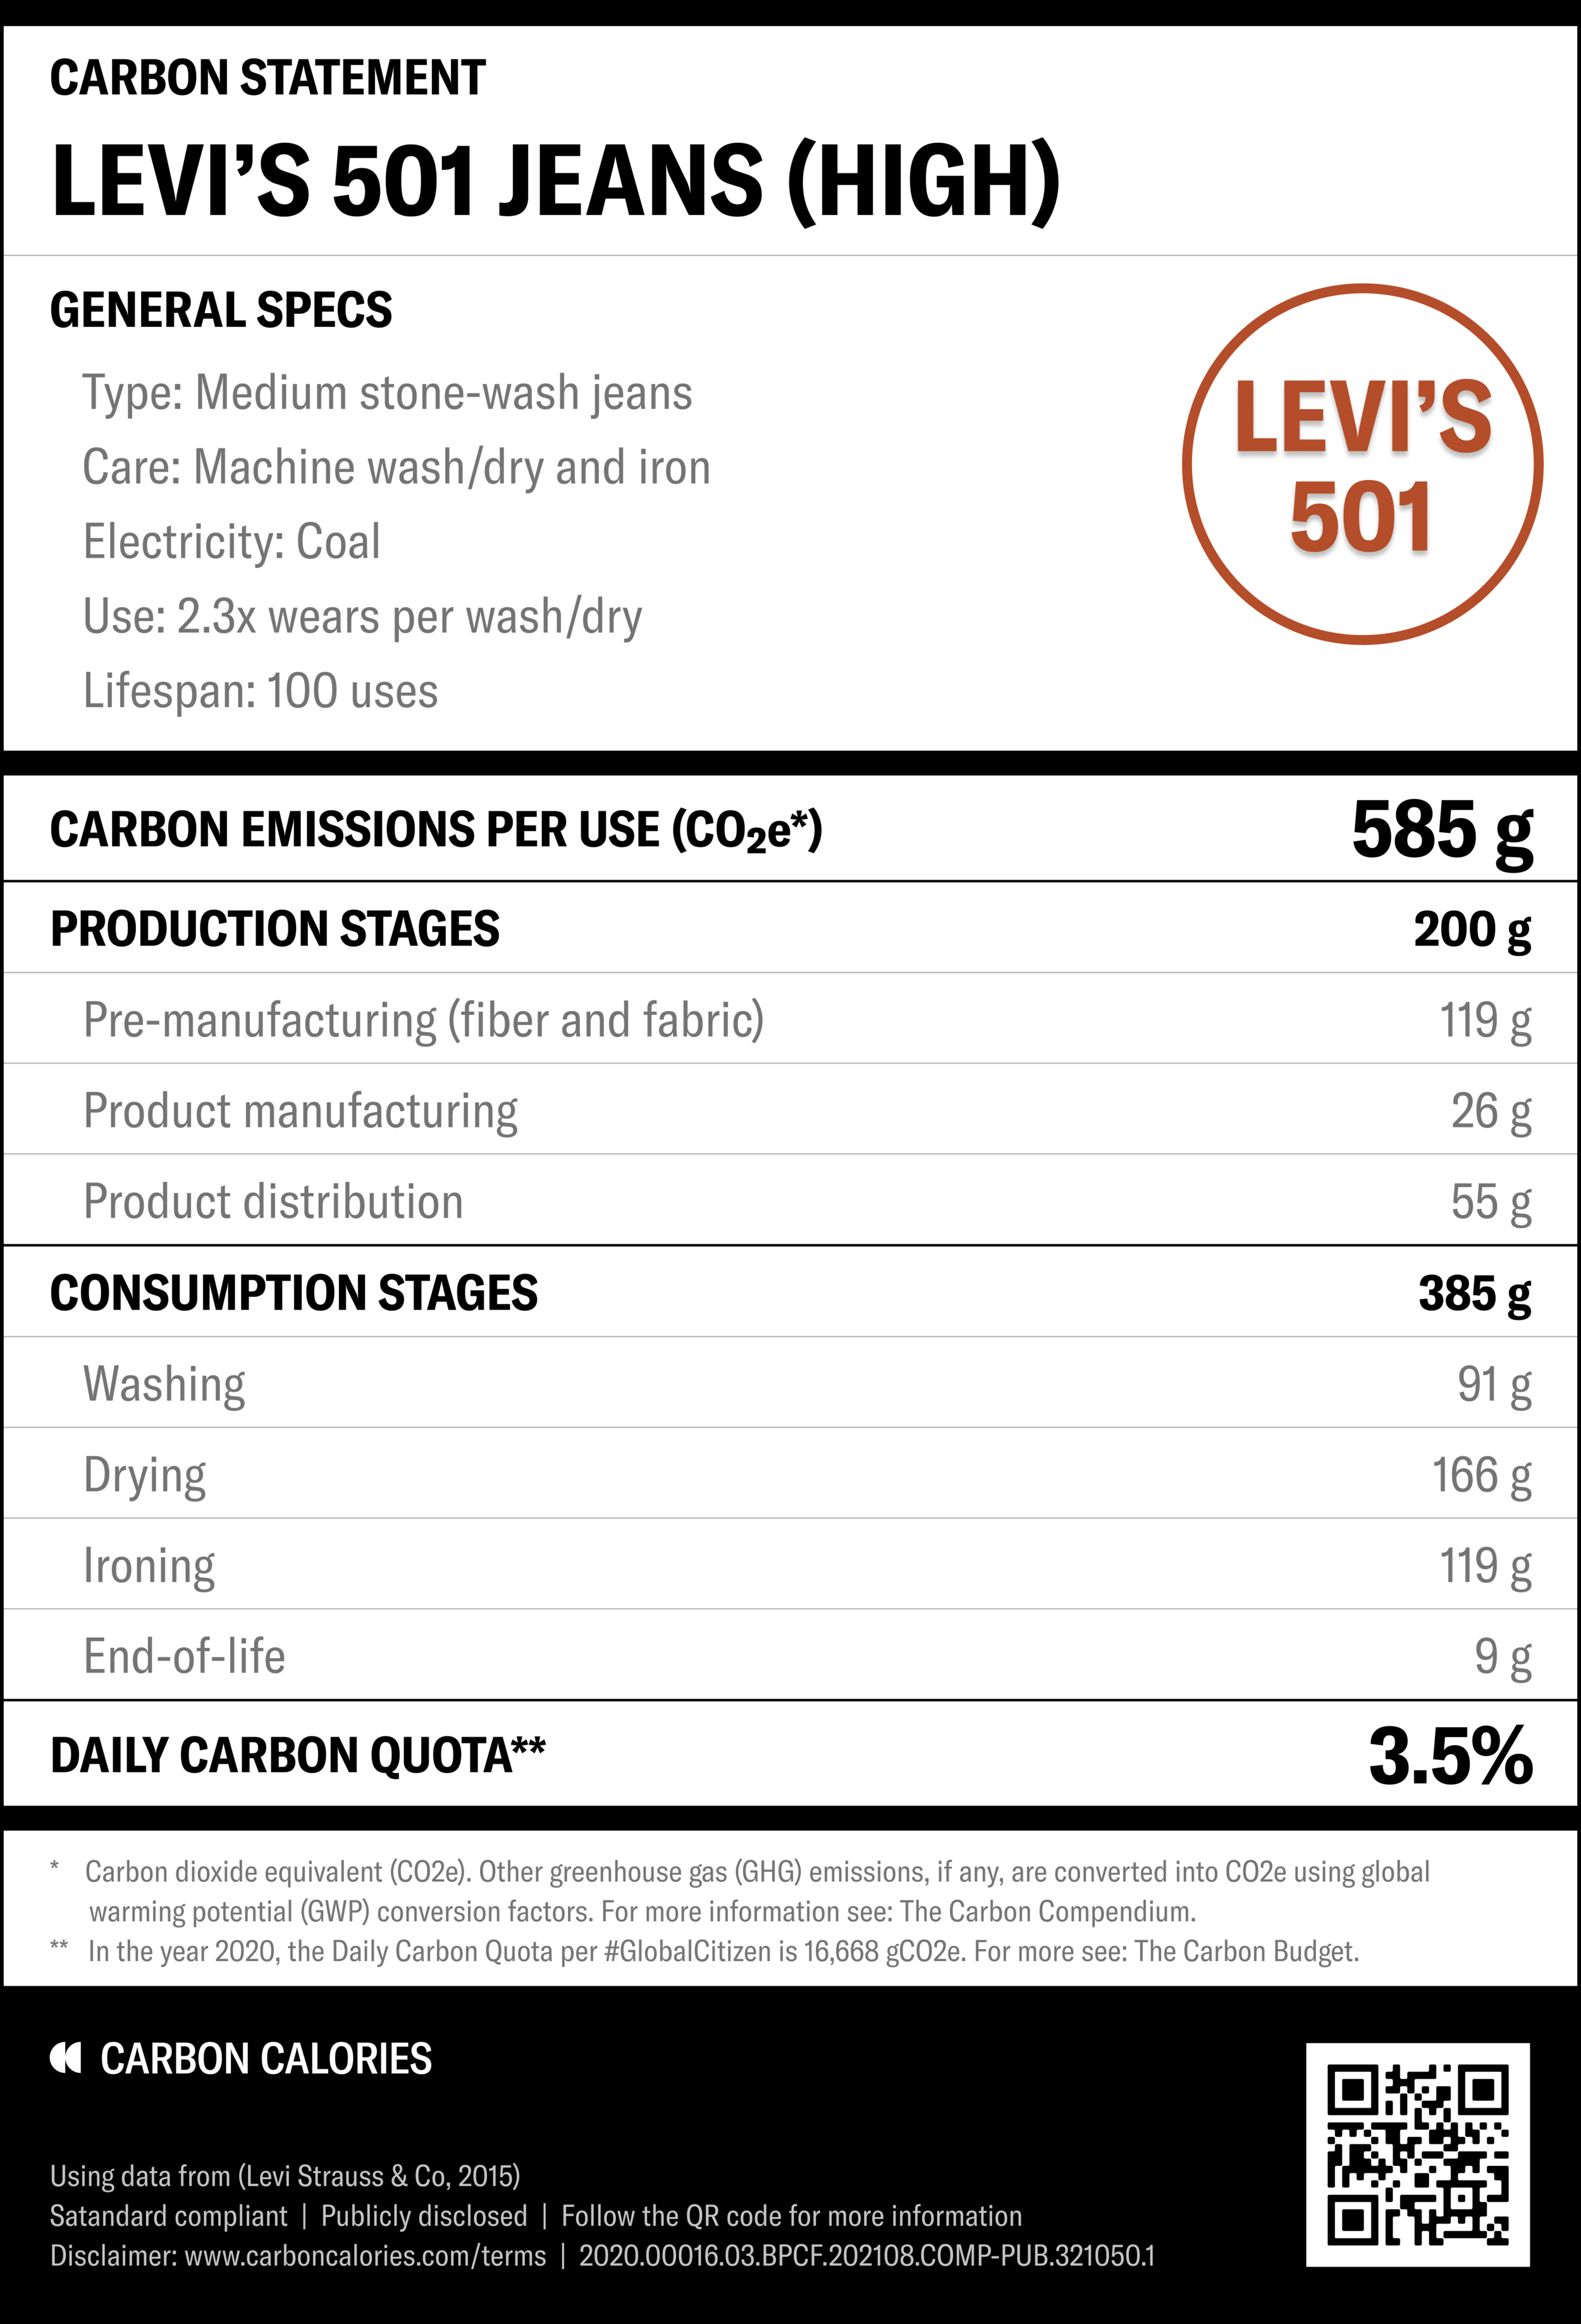 LEVI'S 501 JEANS — CARBON CALORIES